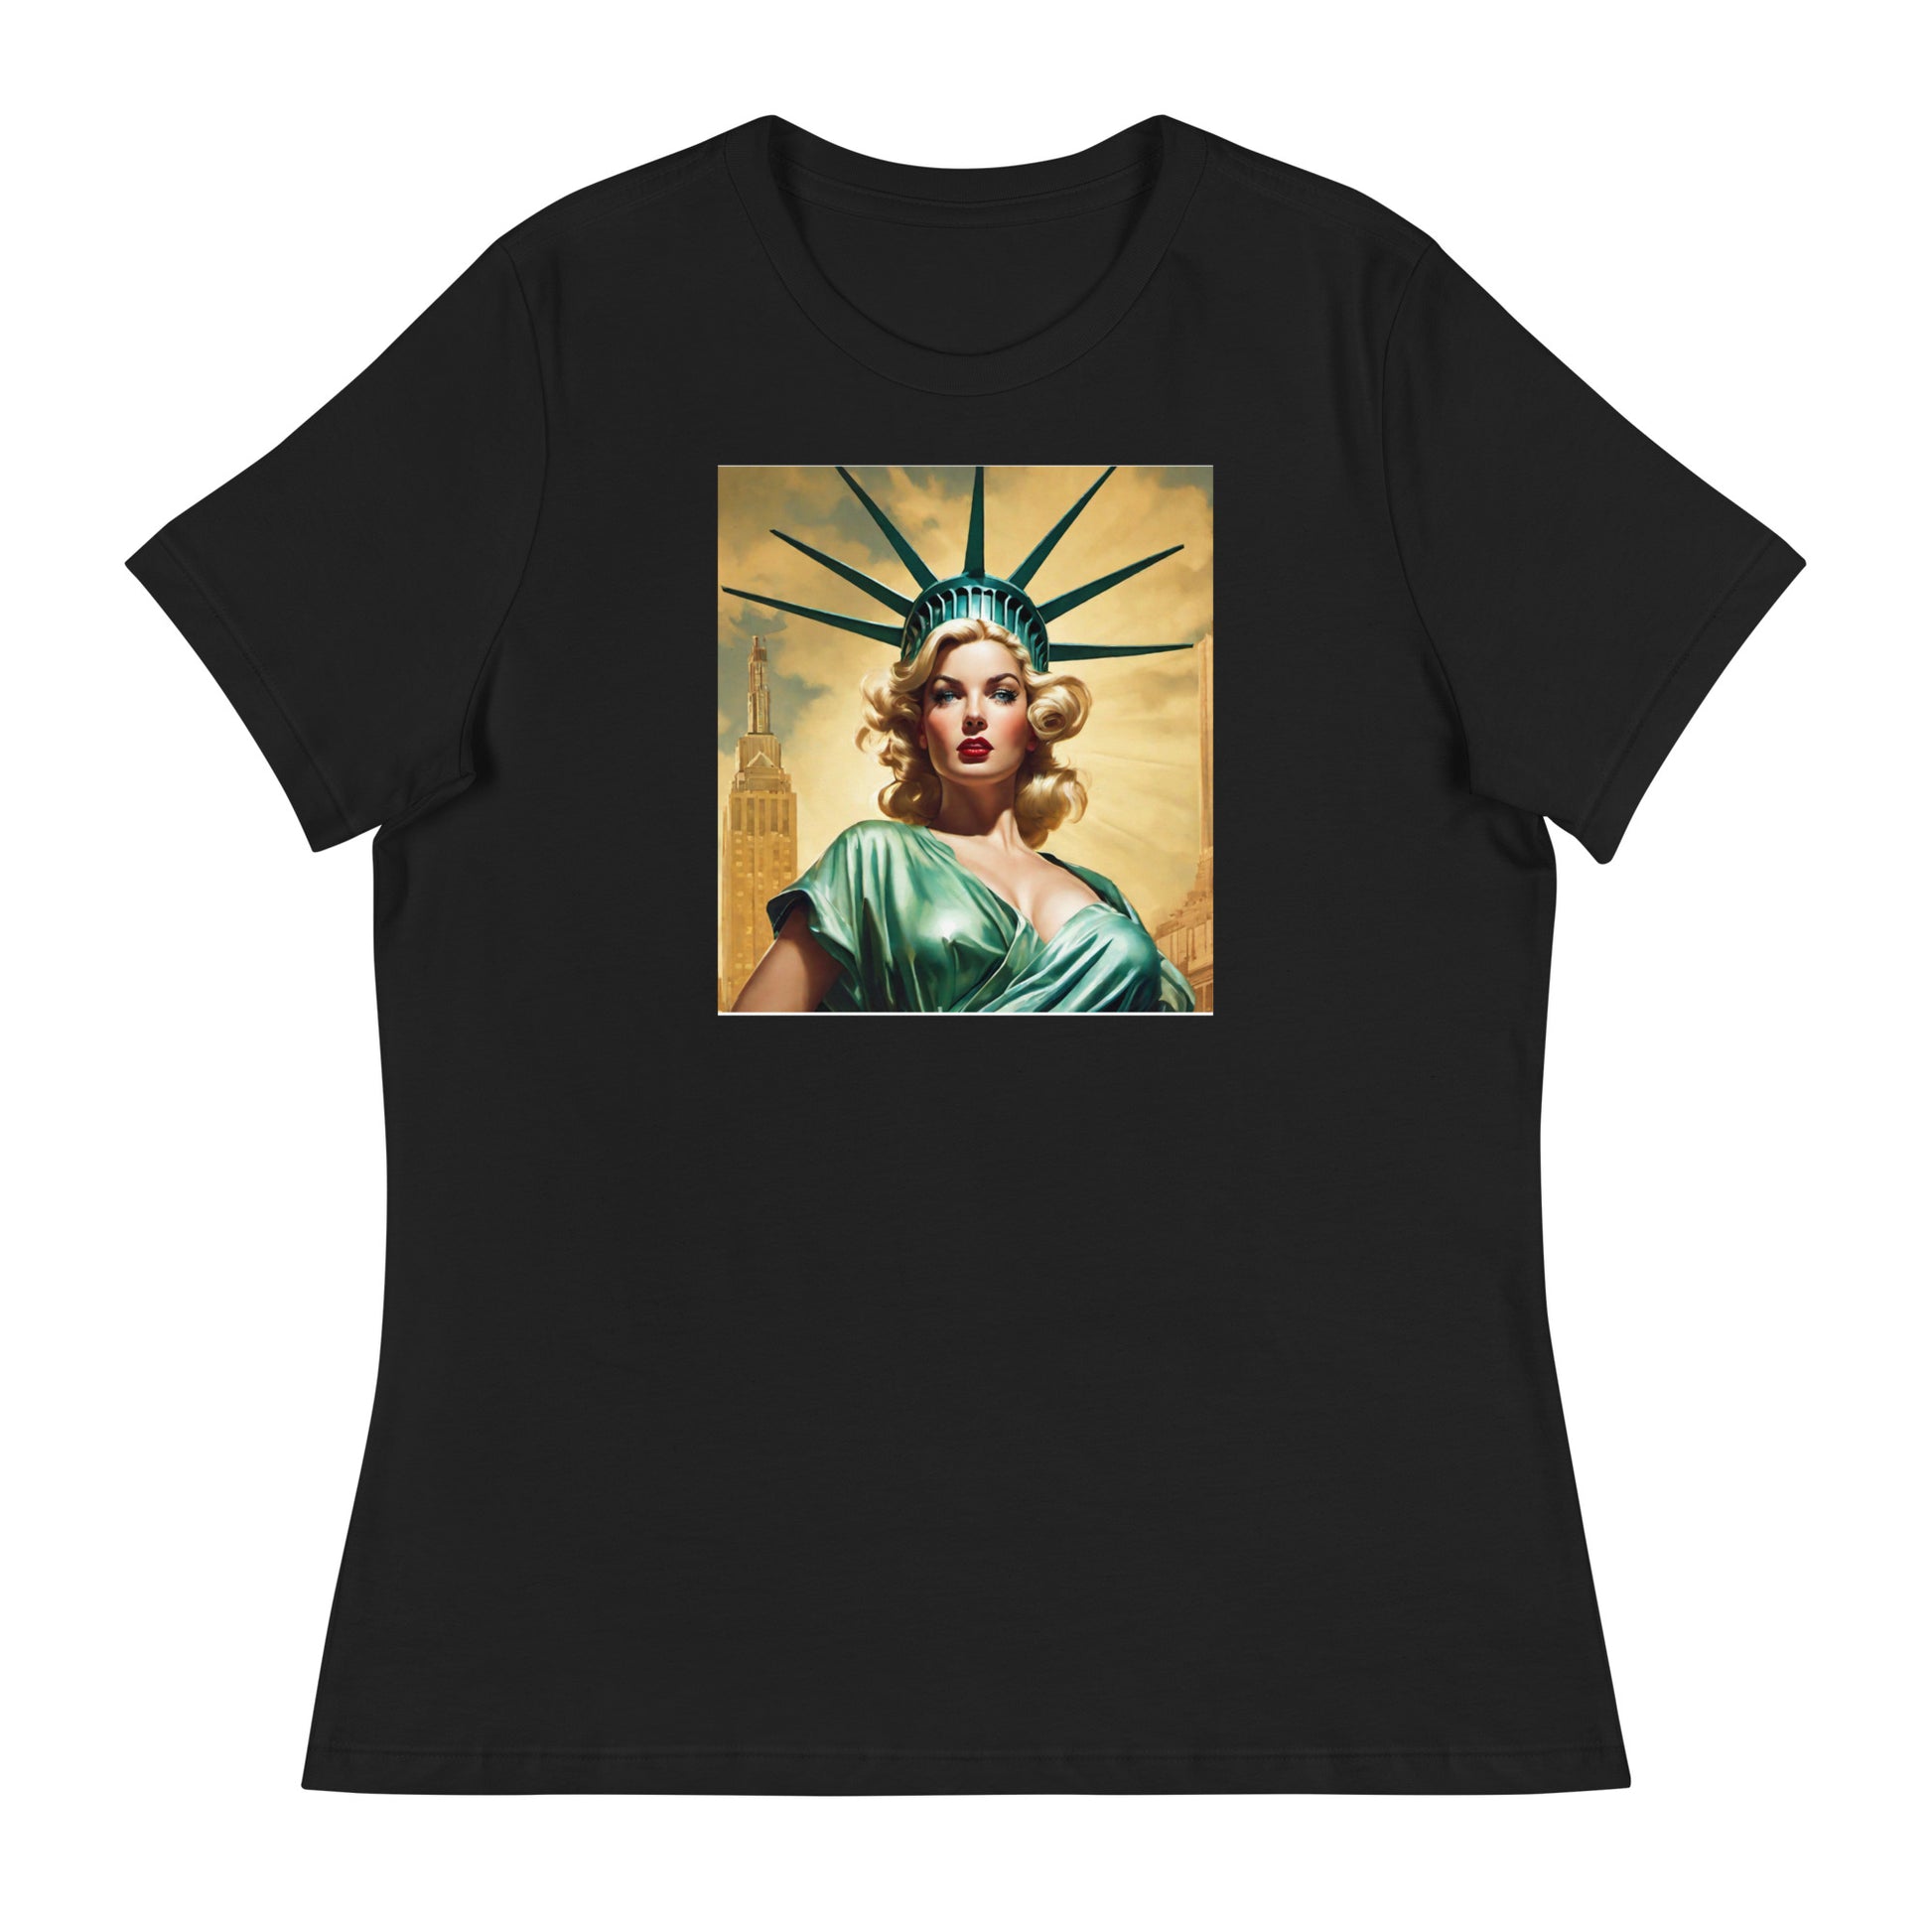 Beautiful Lady Liberty Women's T-Shirt Black